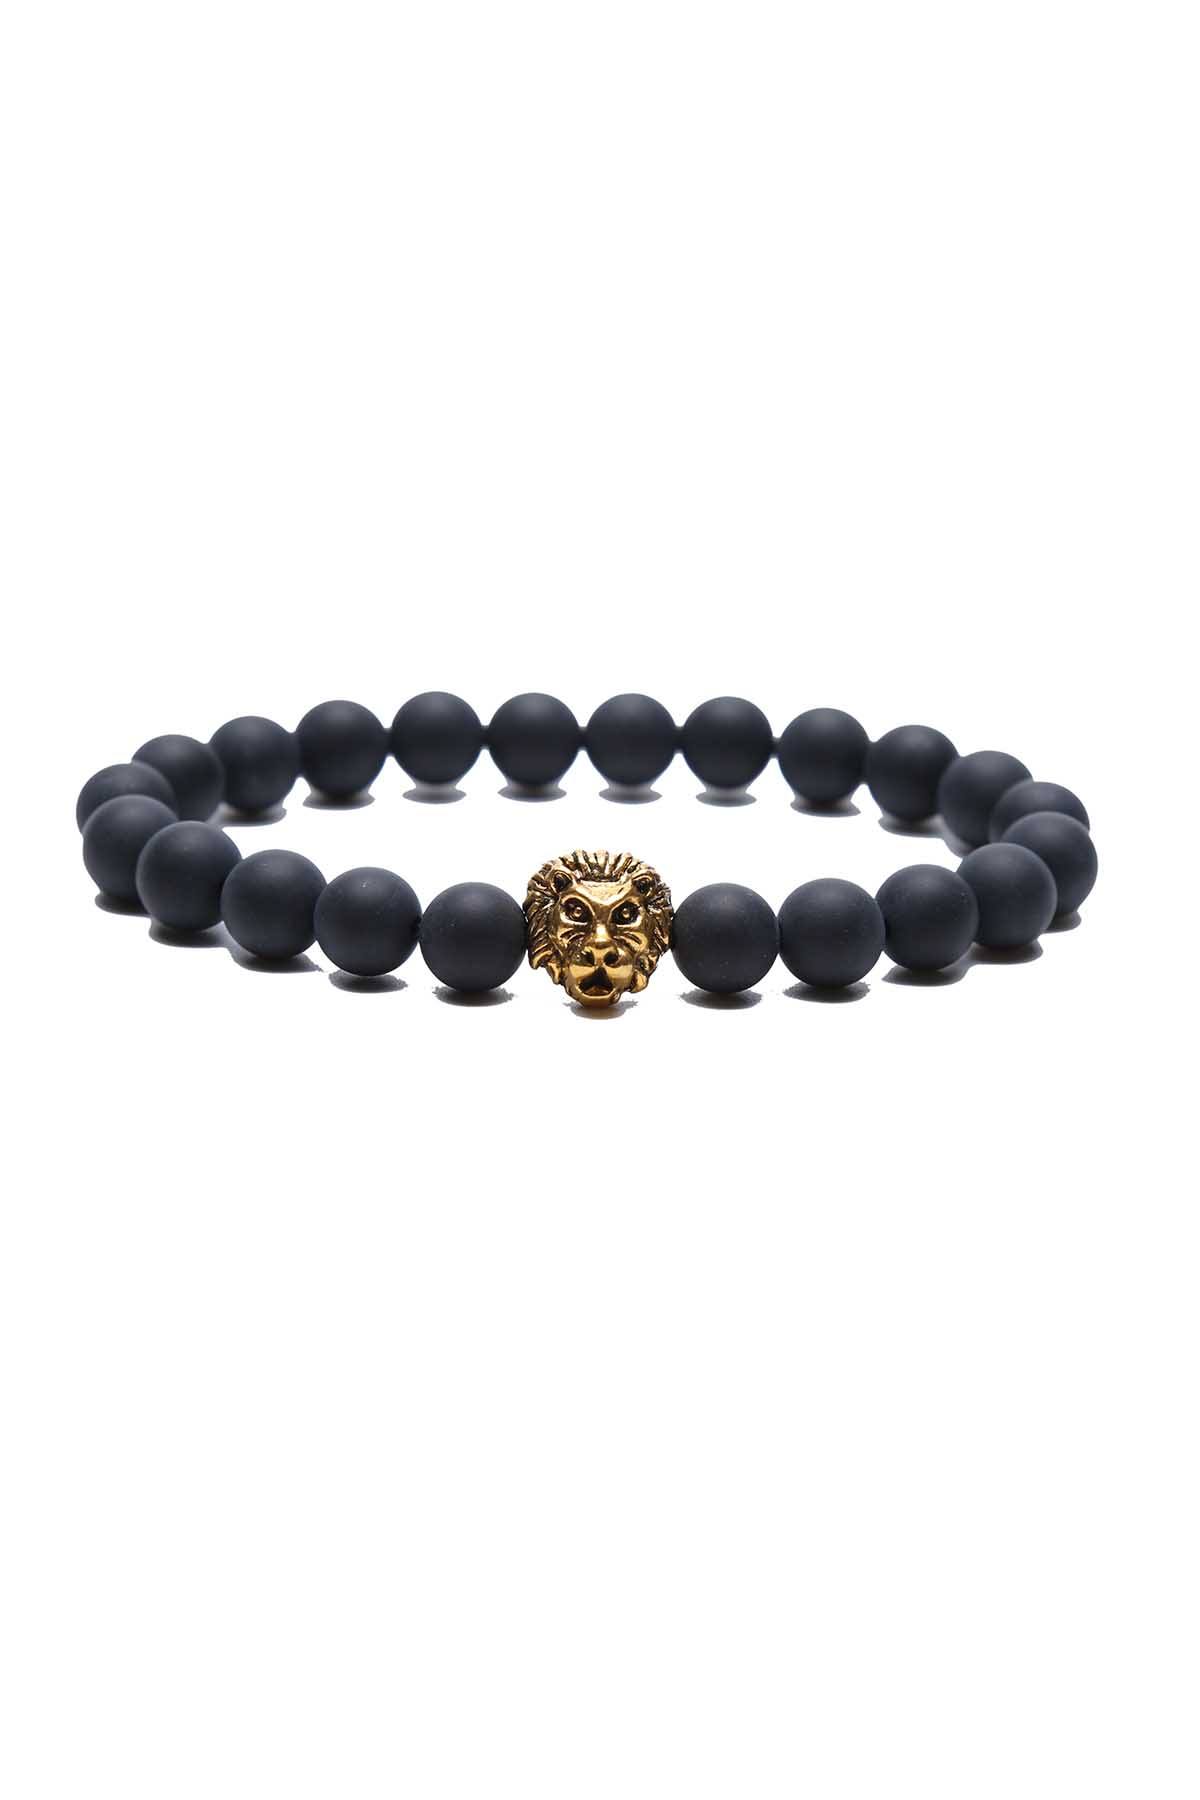 Something Strong Black-Onyx Stone & Gold Lion Bracelet